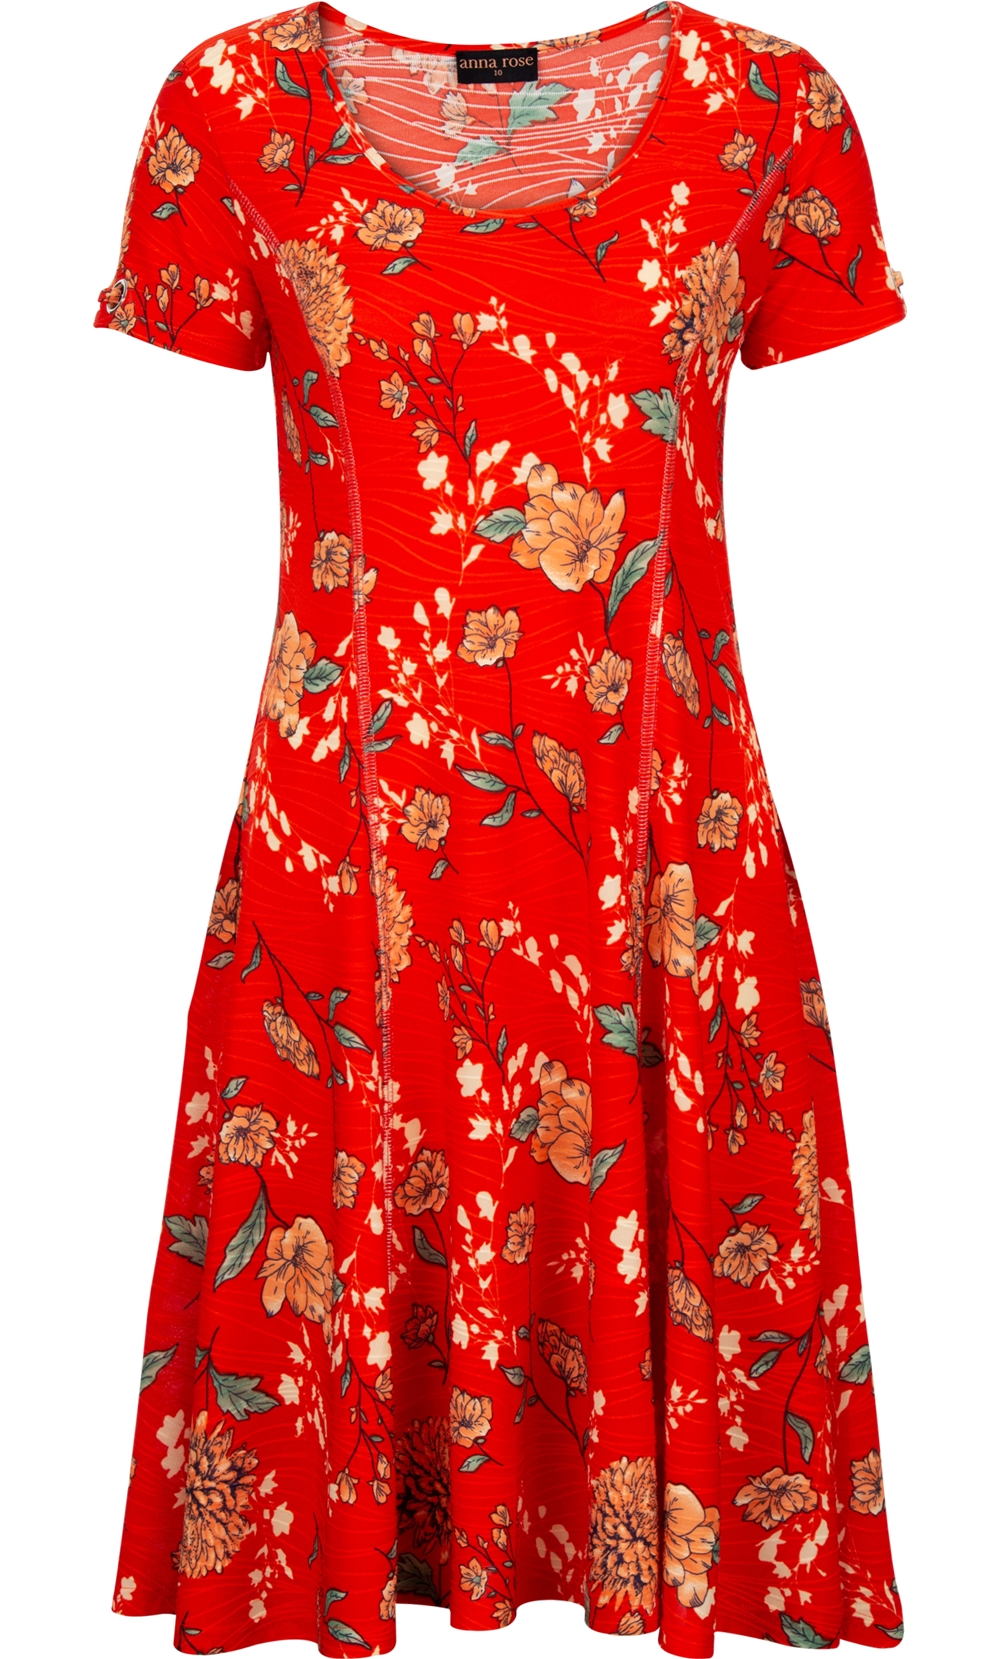 Anna Rose Floral Textured Jersey Dress